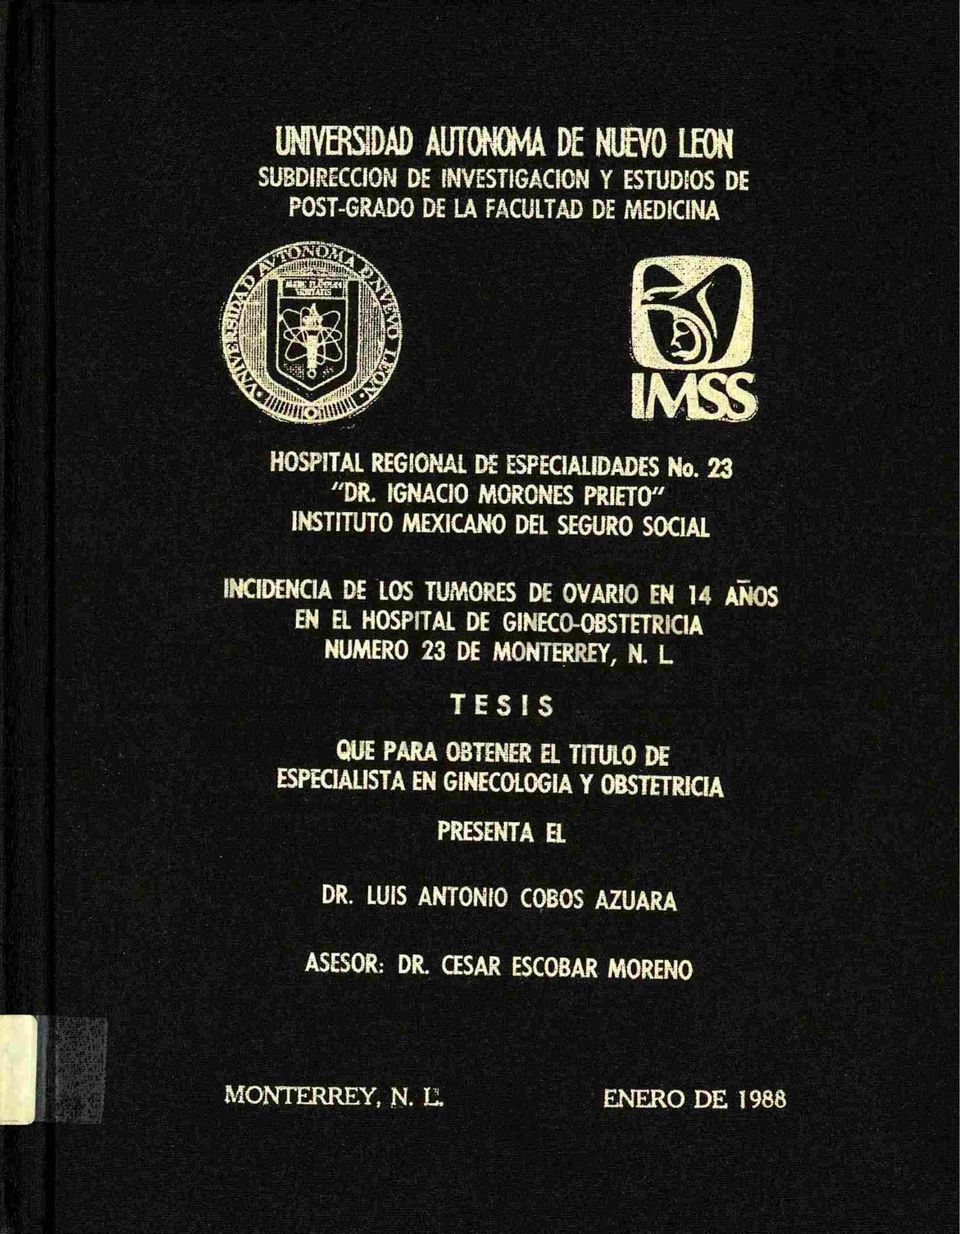 IGNACIO MORONES PRIETO" INSTITUTO MEXICANO DEL SEGURO SOCIAL INCIDENCIA DE LOS TUMORES DE OVARIO EN 14 EN EL HOSPITAL DE